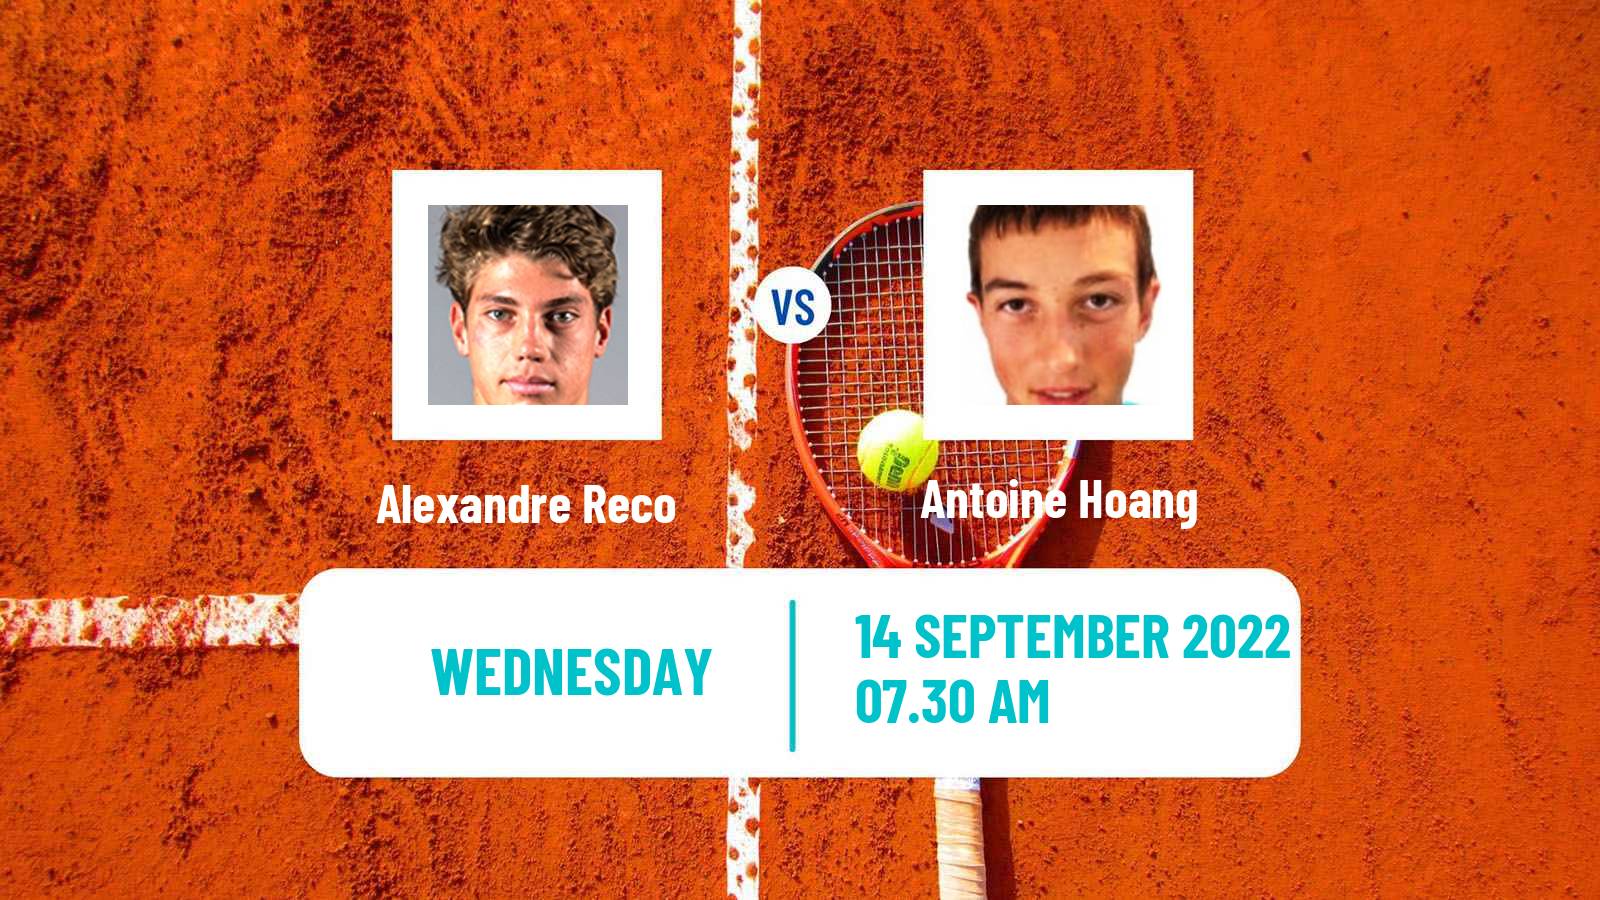 Tennis ITF Tournaments Alexandre Reco - Antoine Hoang